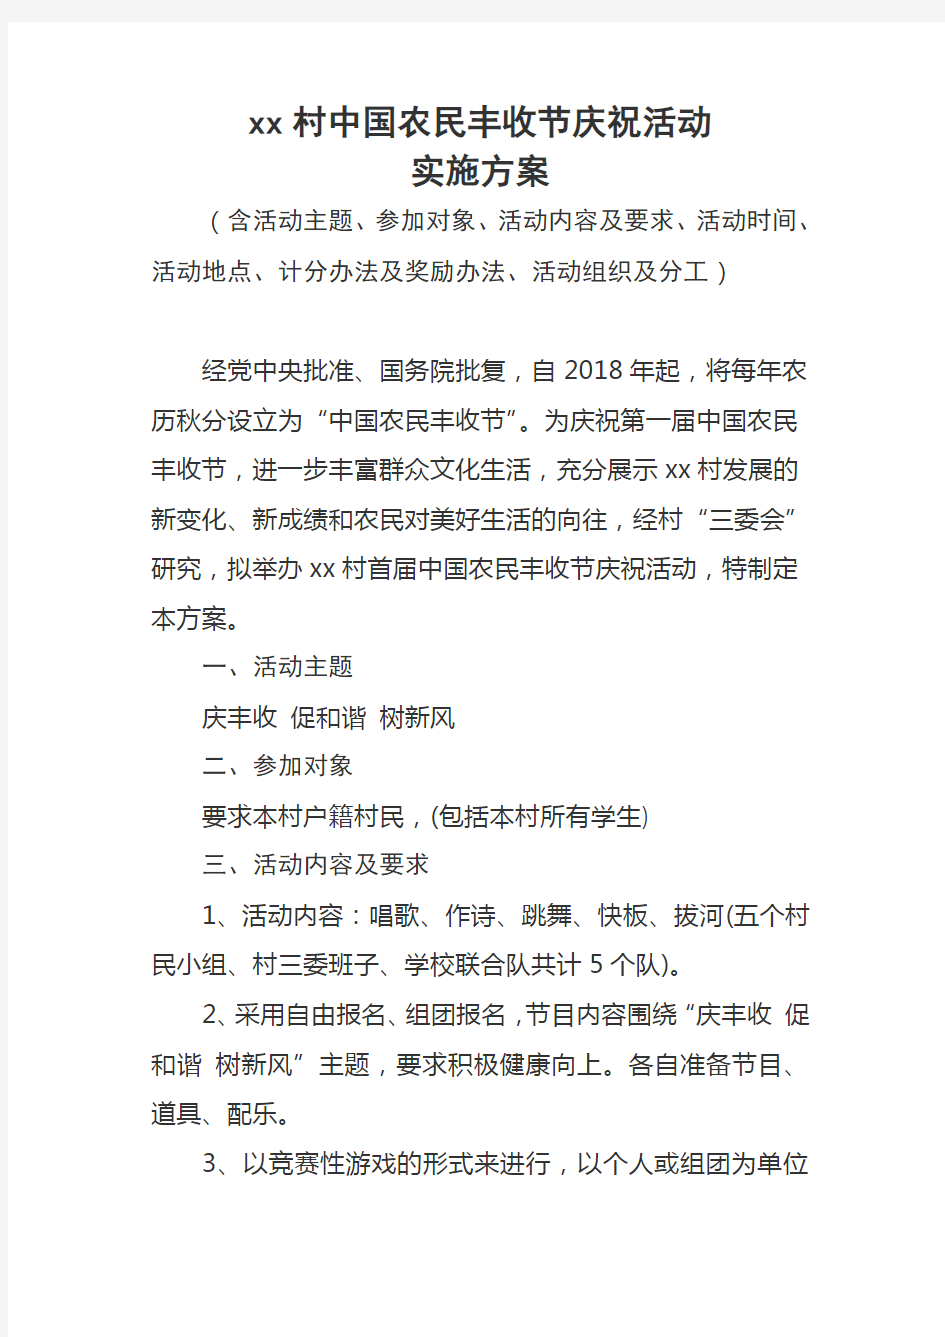 xx村中国农民丰收节庆祝活动实施方案(含主题、形式、分工等)